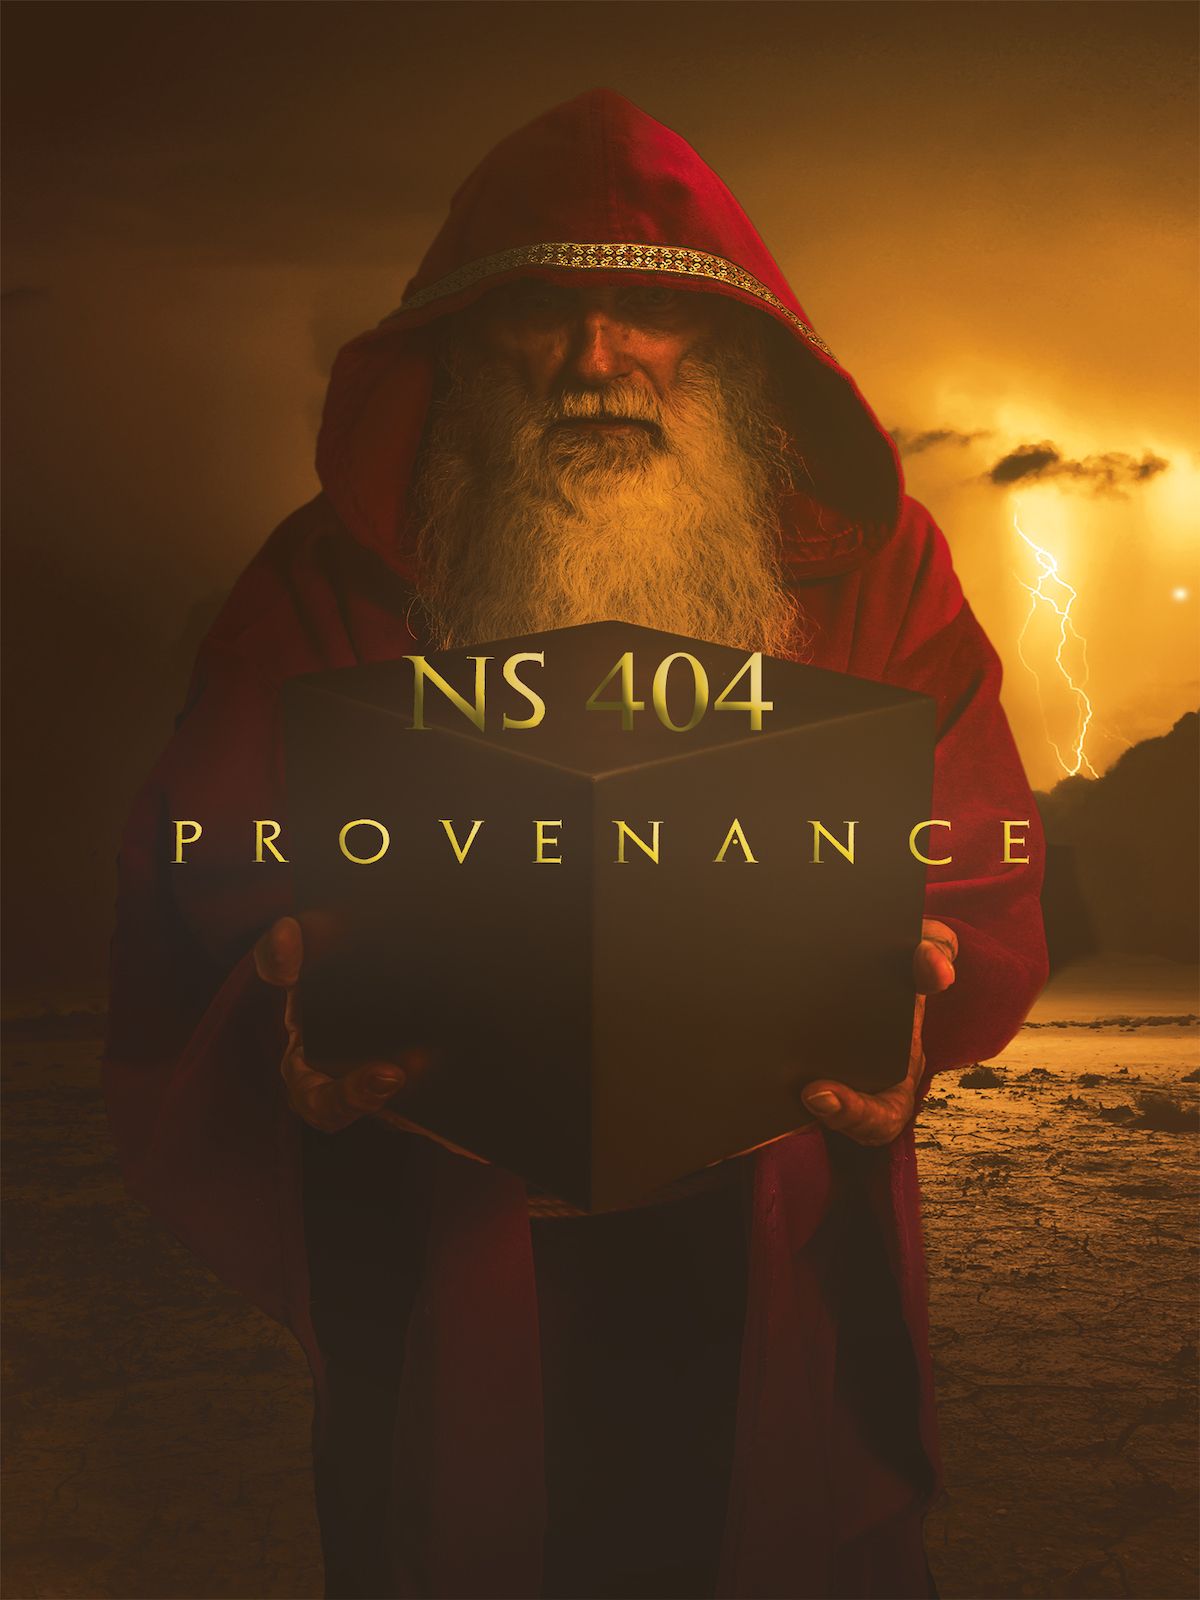 NS404 (Provenienza)